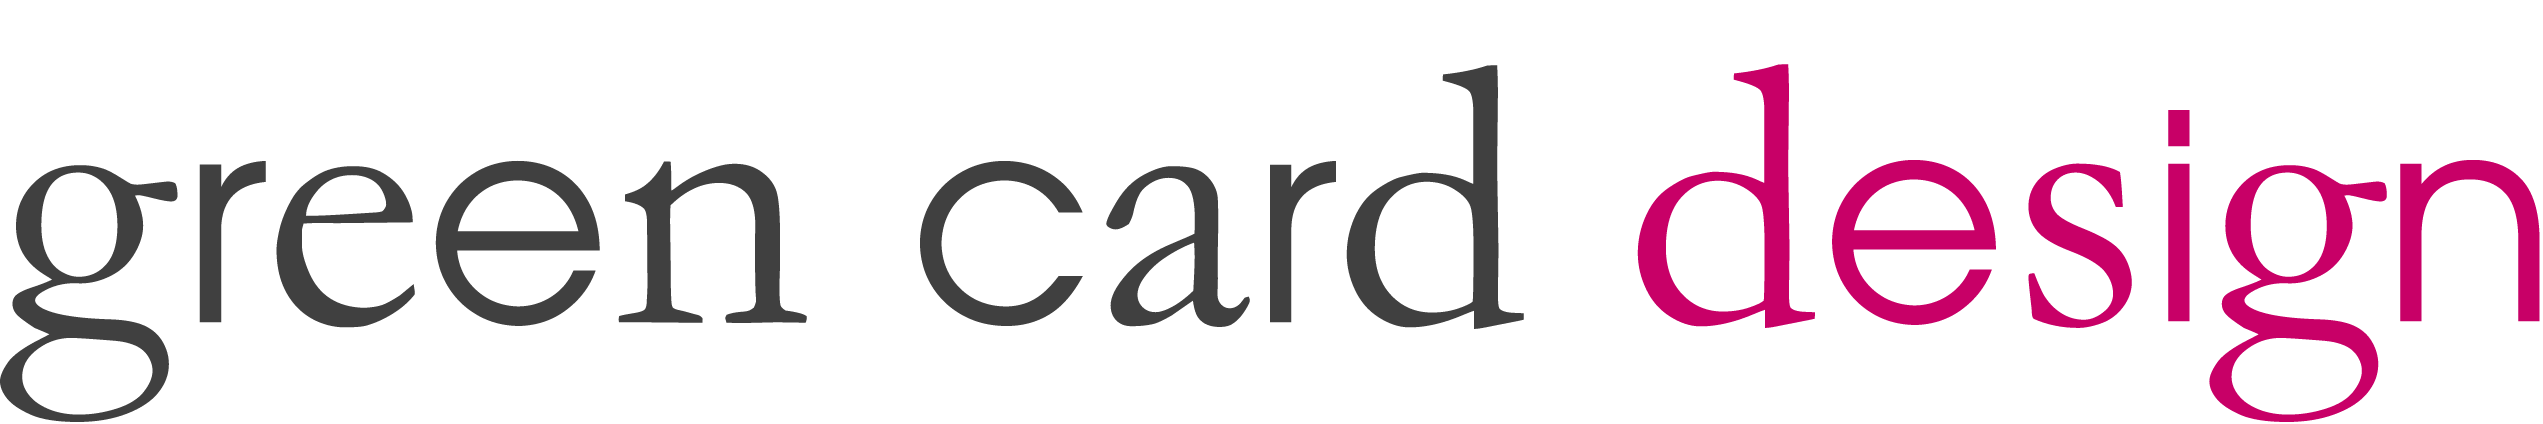 Green Card Design logo